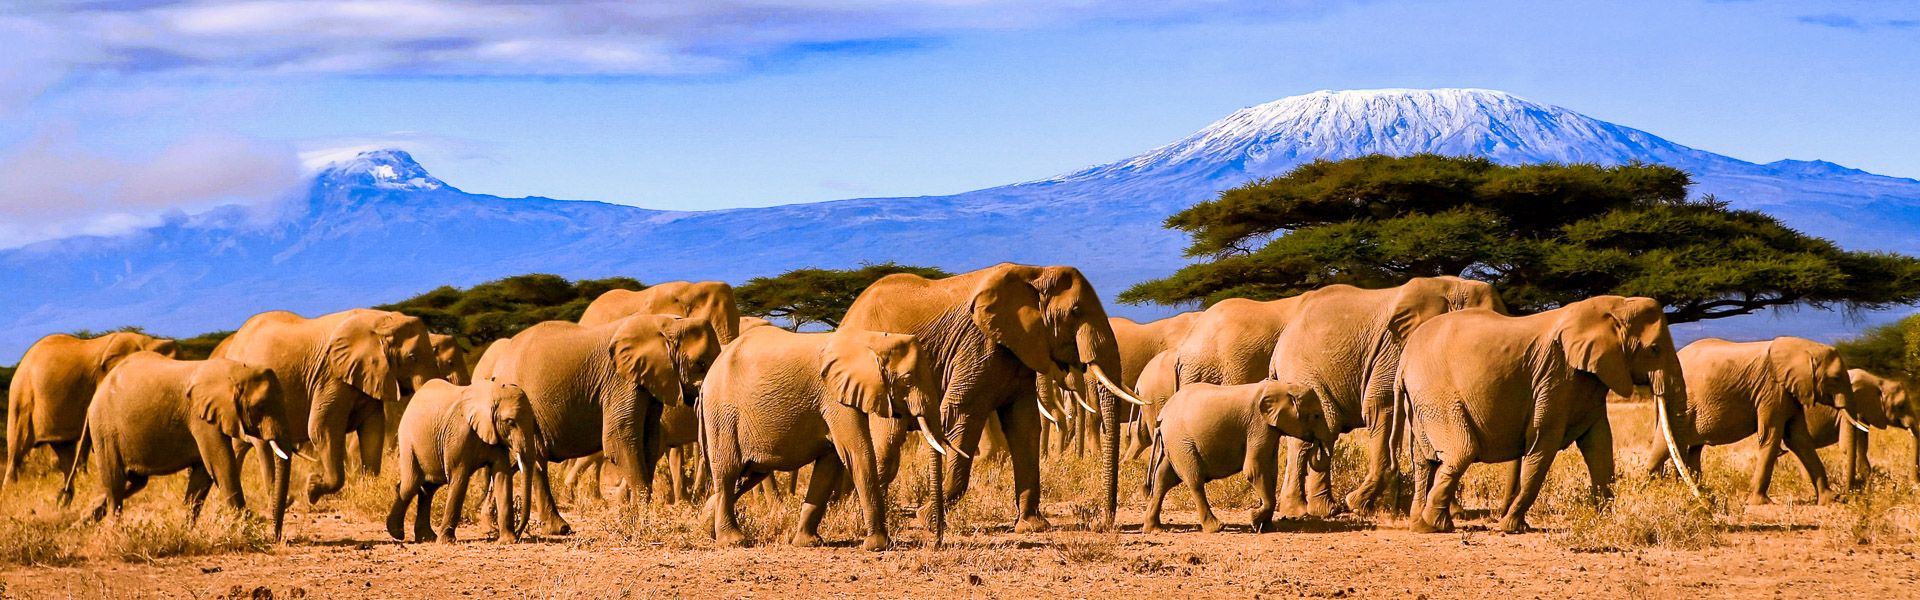 Afrikanische Elefanten vor dem Kilimanjaro |  104kelly, iStockphoto.com / Chamleon